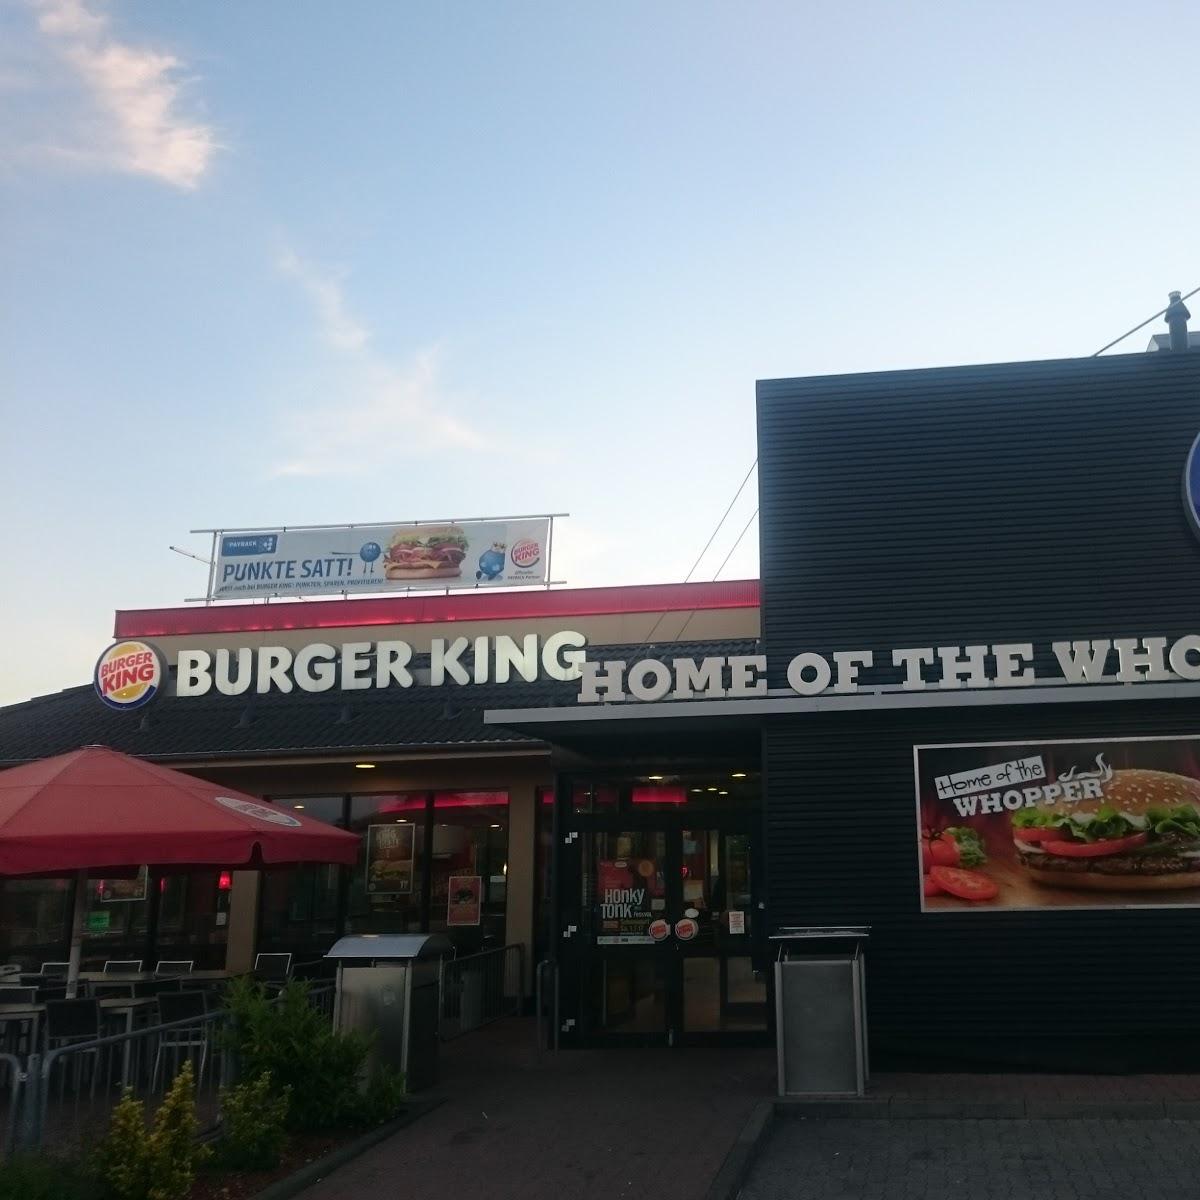 Restaurant "BURGER KING" in Schweinfurt